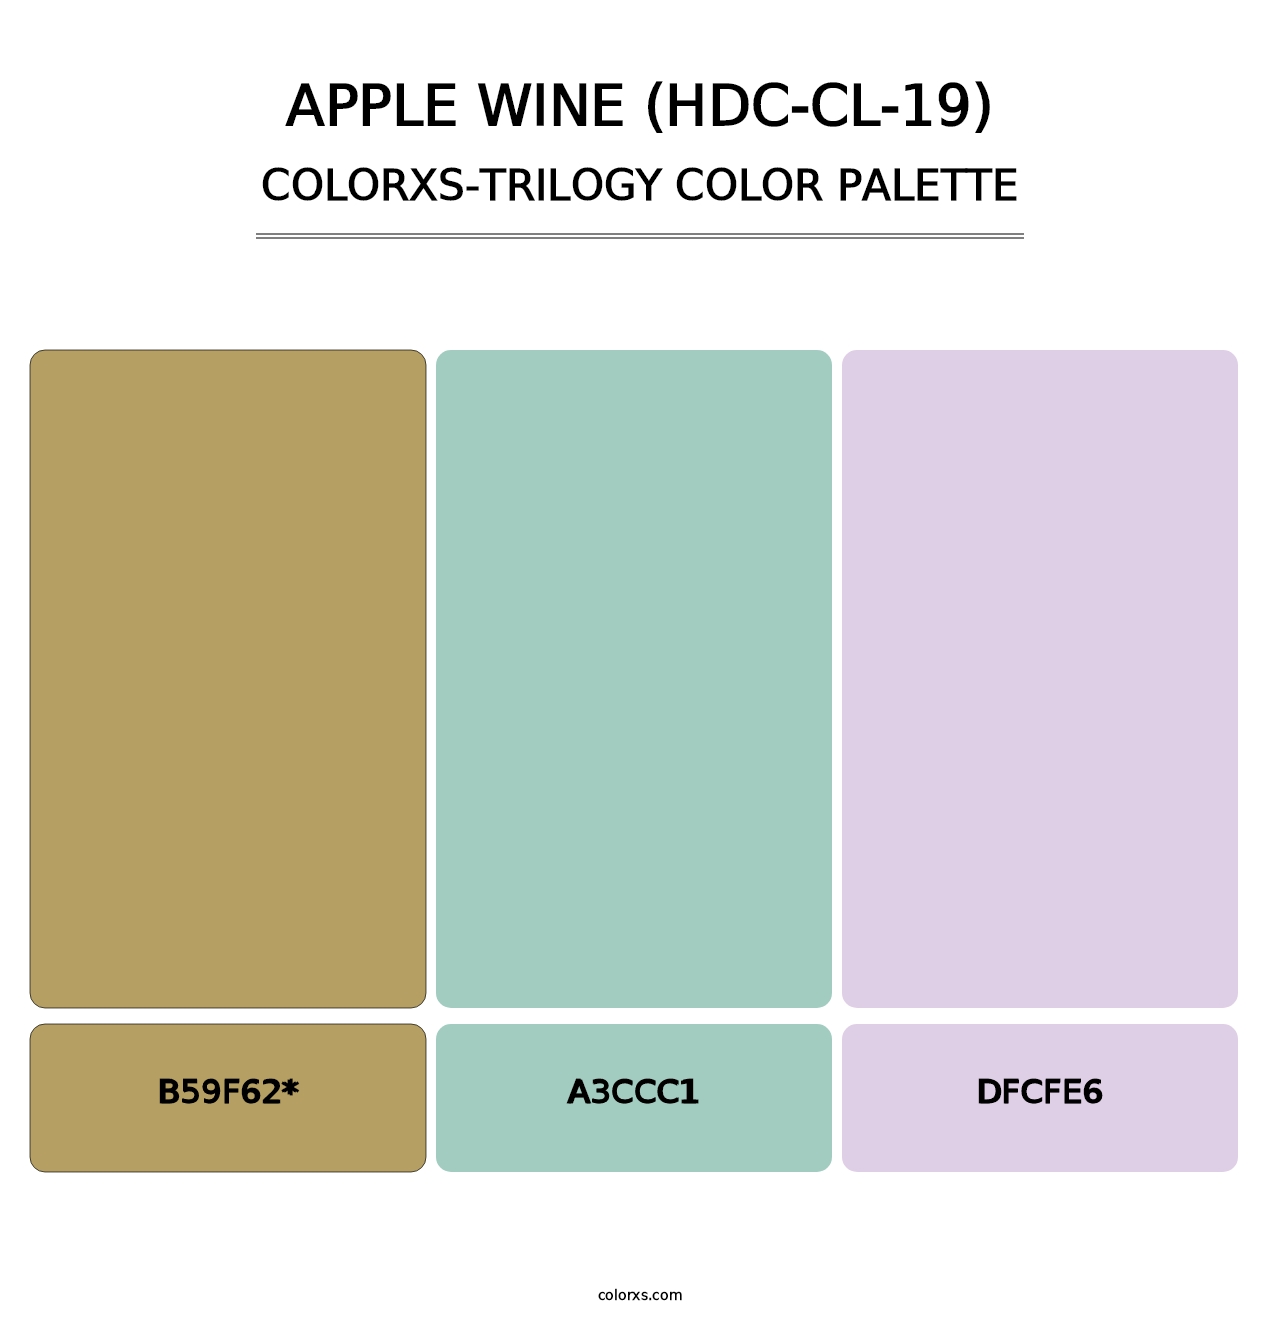 Apple Wine (HDC-CL-19) - Colorxs Trilogy Palette